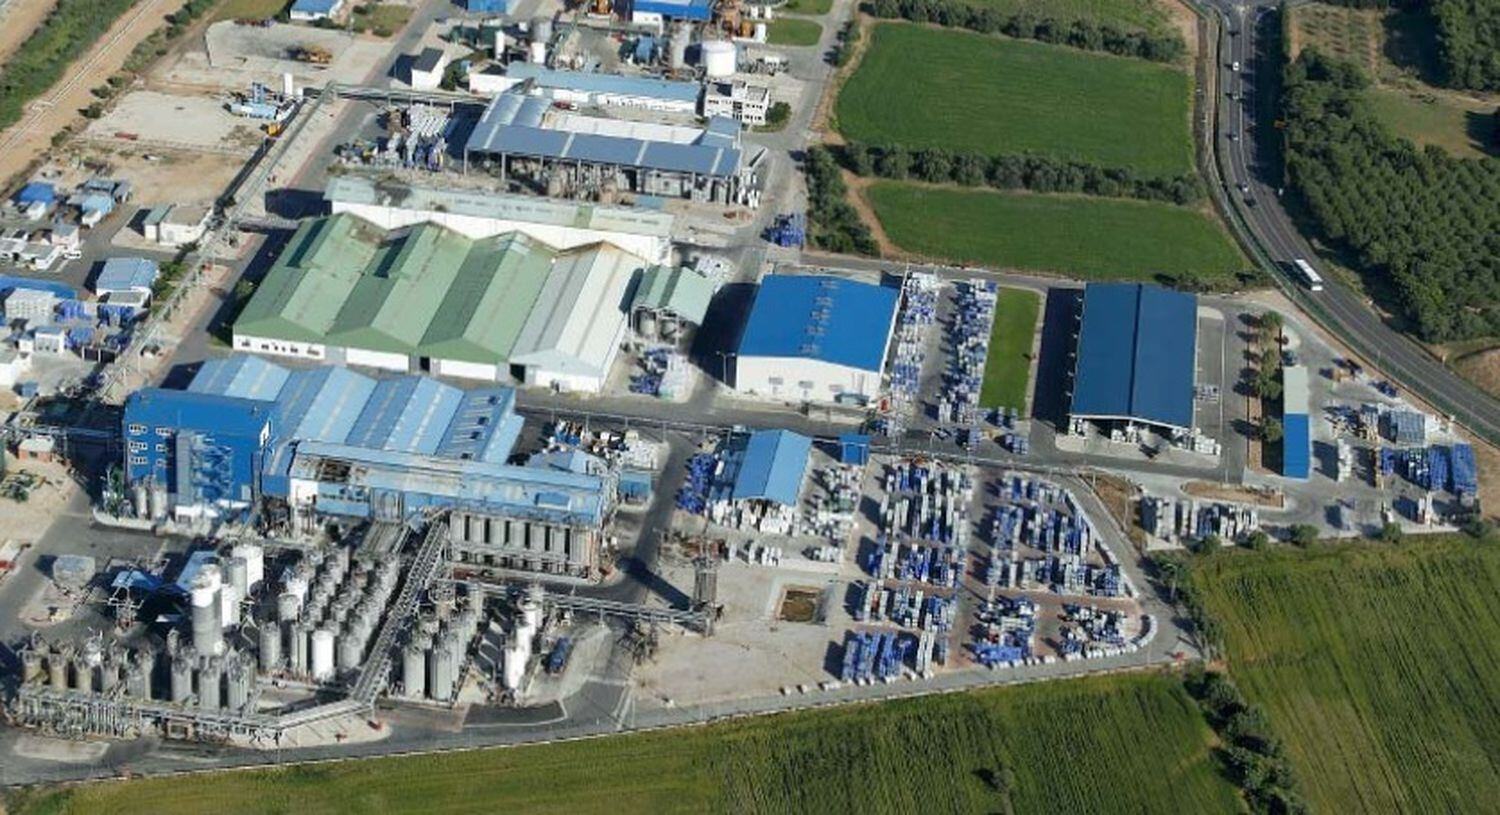 La planta de Emulsiones Poliméricas en Vila-seca (Tarragona)

EMULSIONES POLIMÉRICAS
08/07/2020 